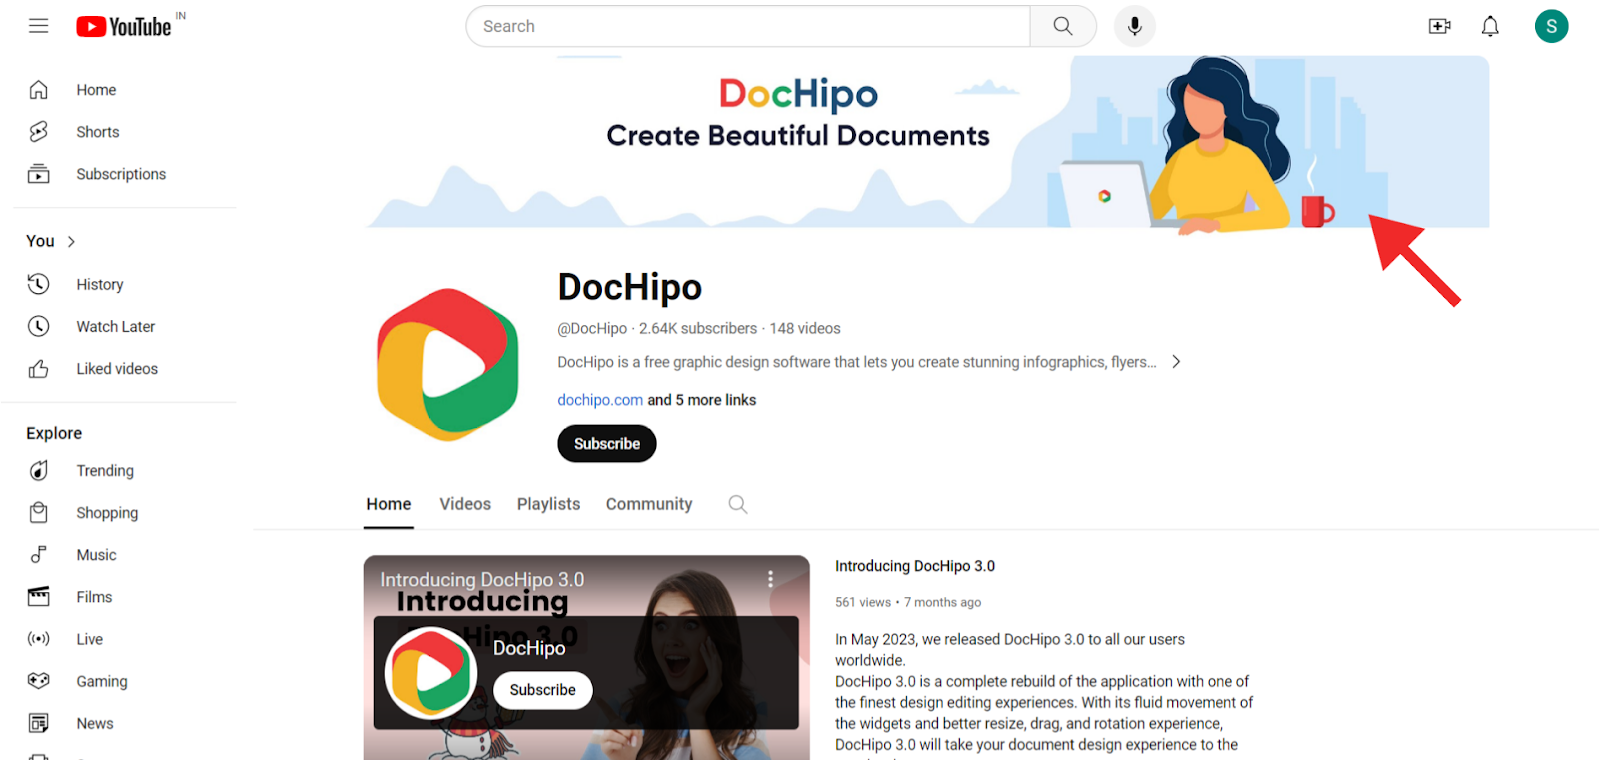  DocHipo YouTube channel art